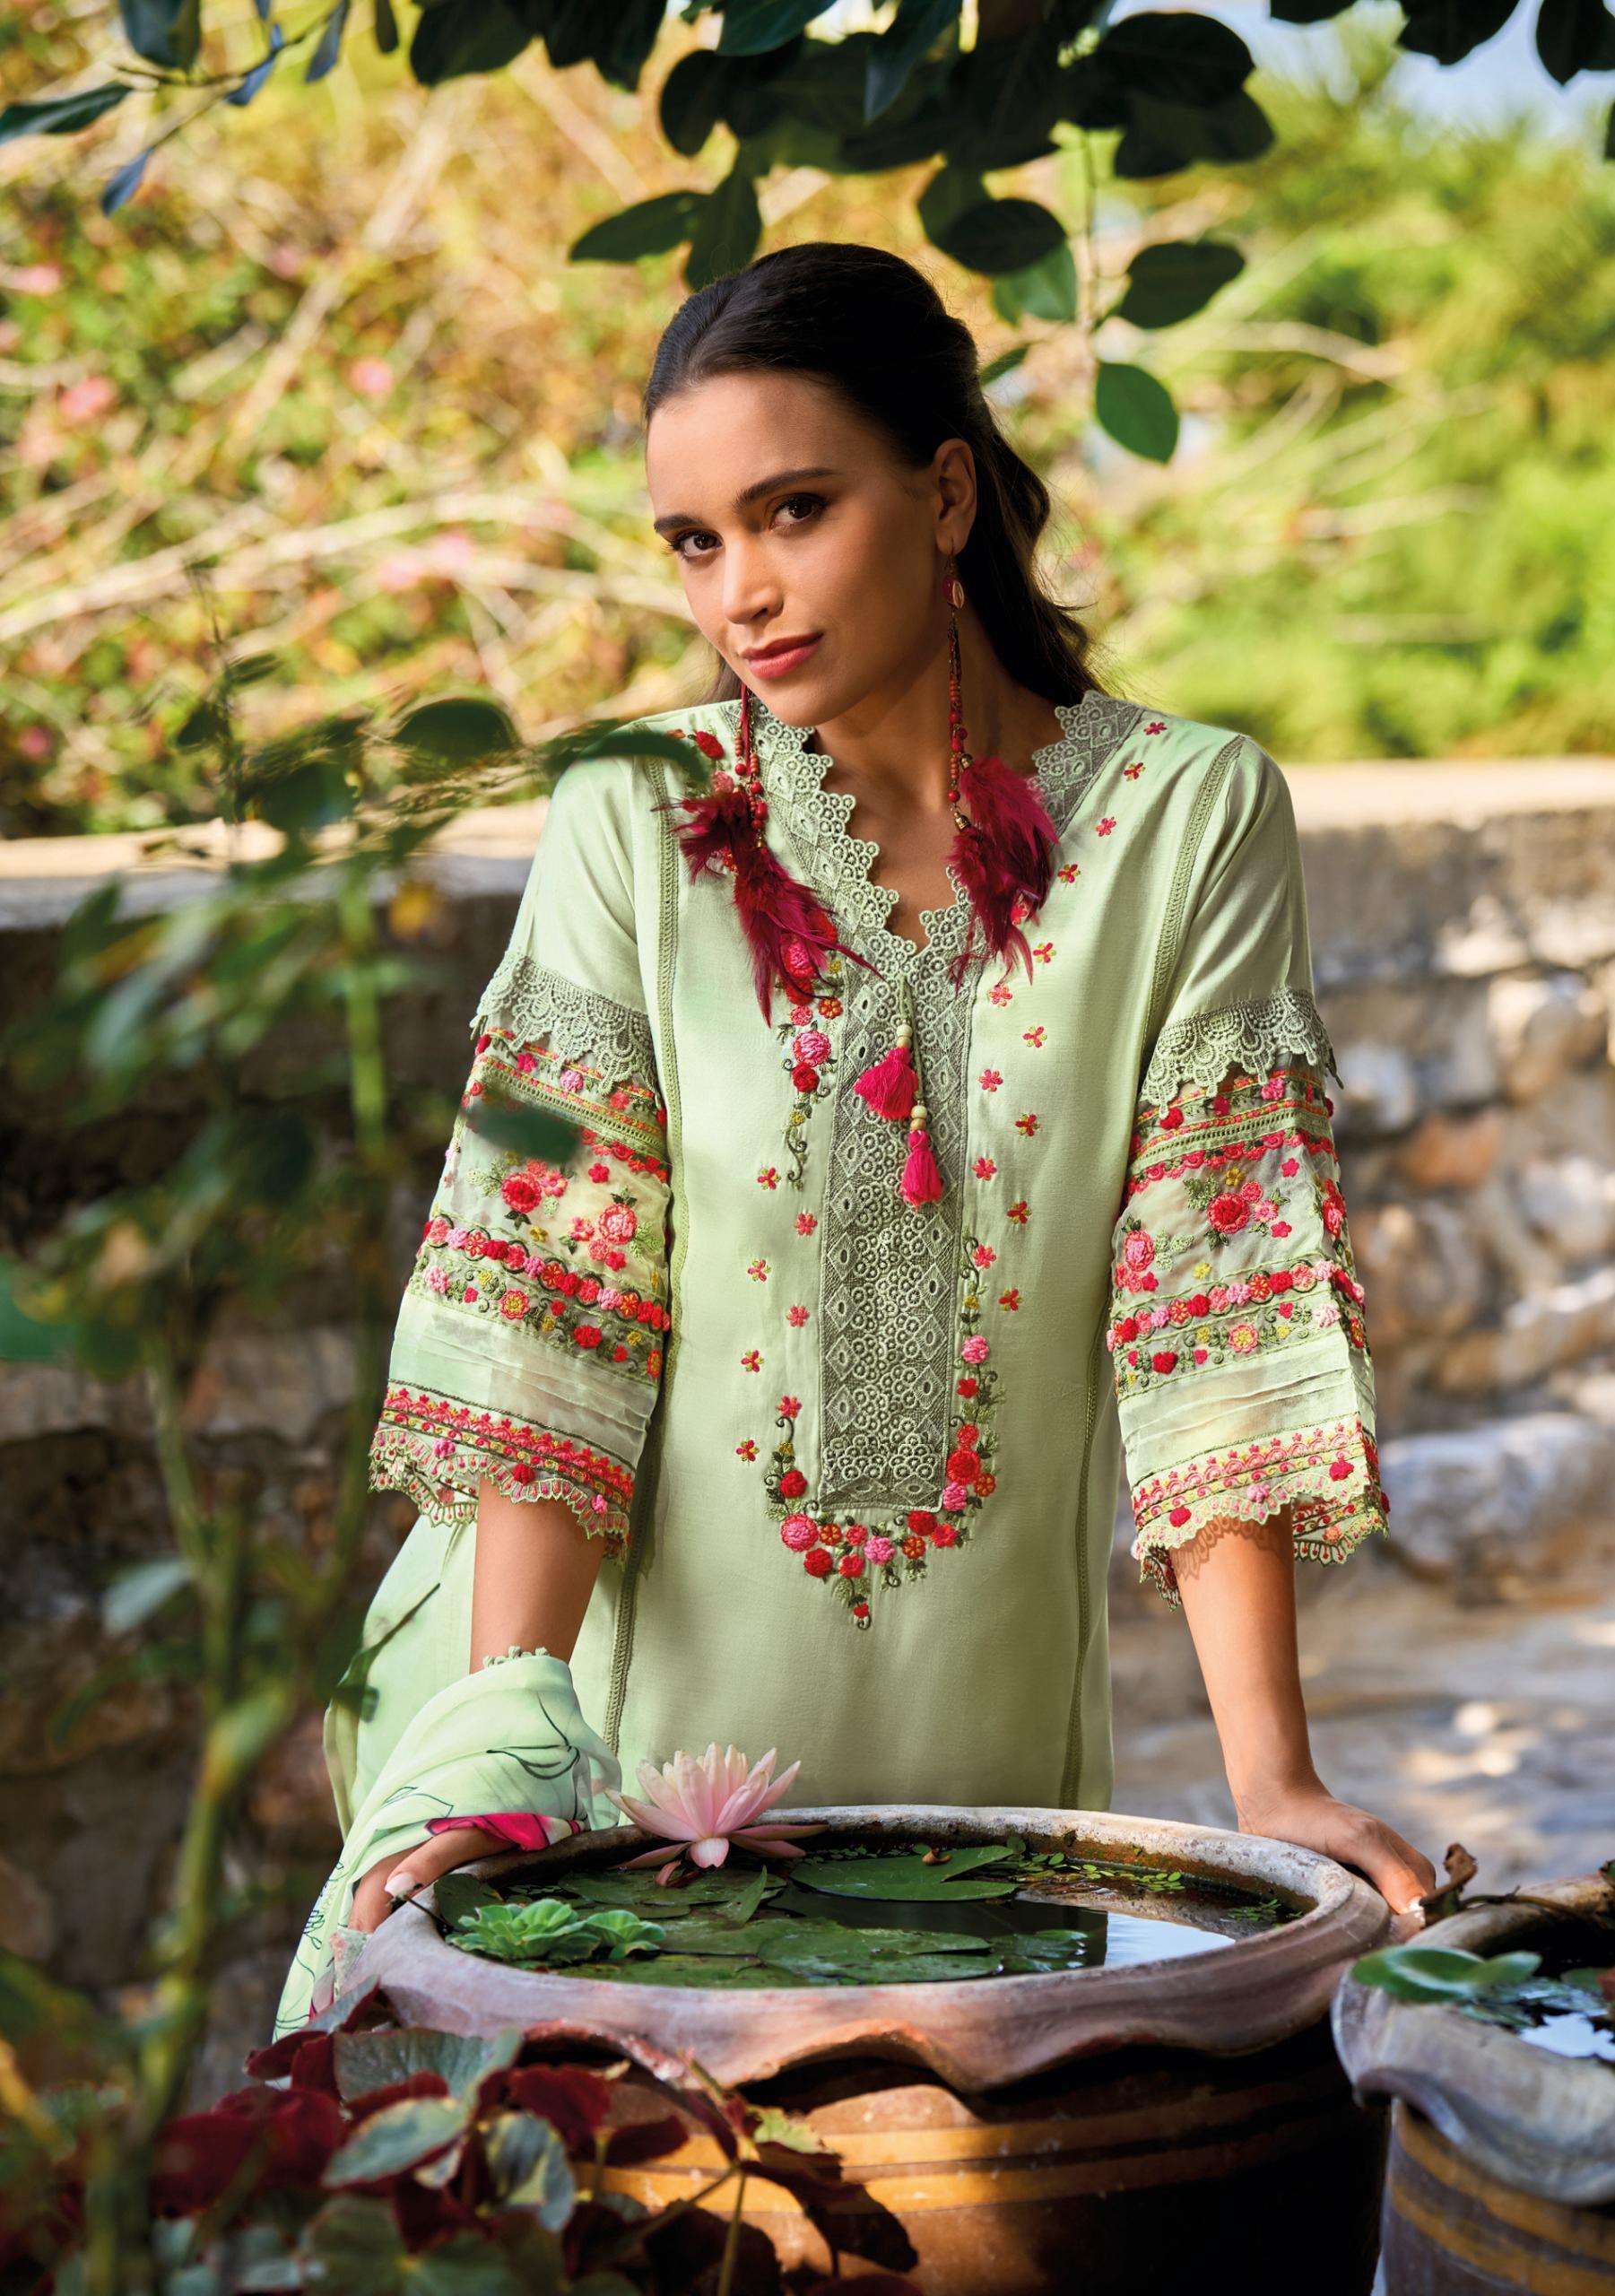 KAILEE FASHION  SANJ- E- SHRUNGAR Pakistani Suits Wholesale catalog